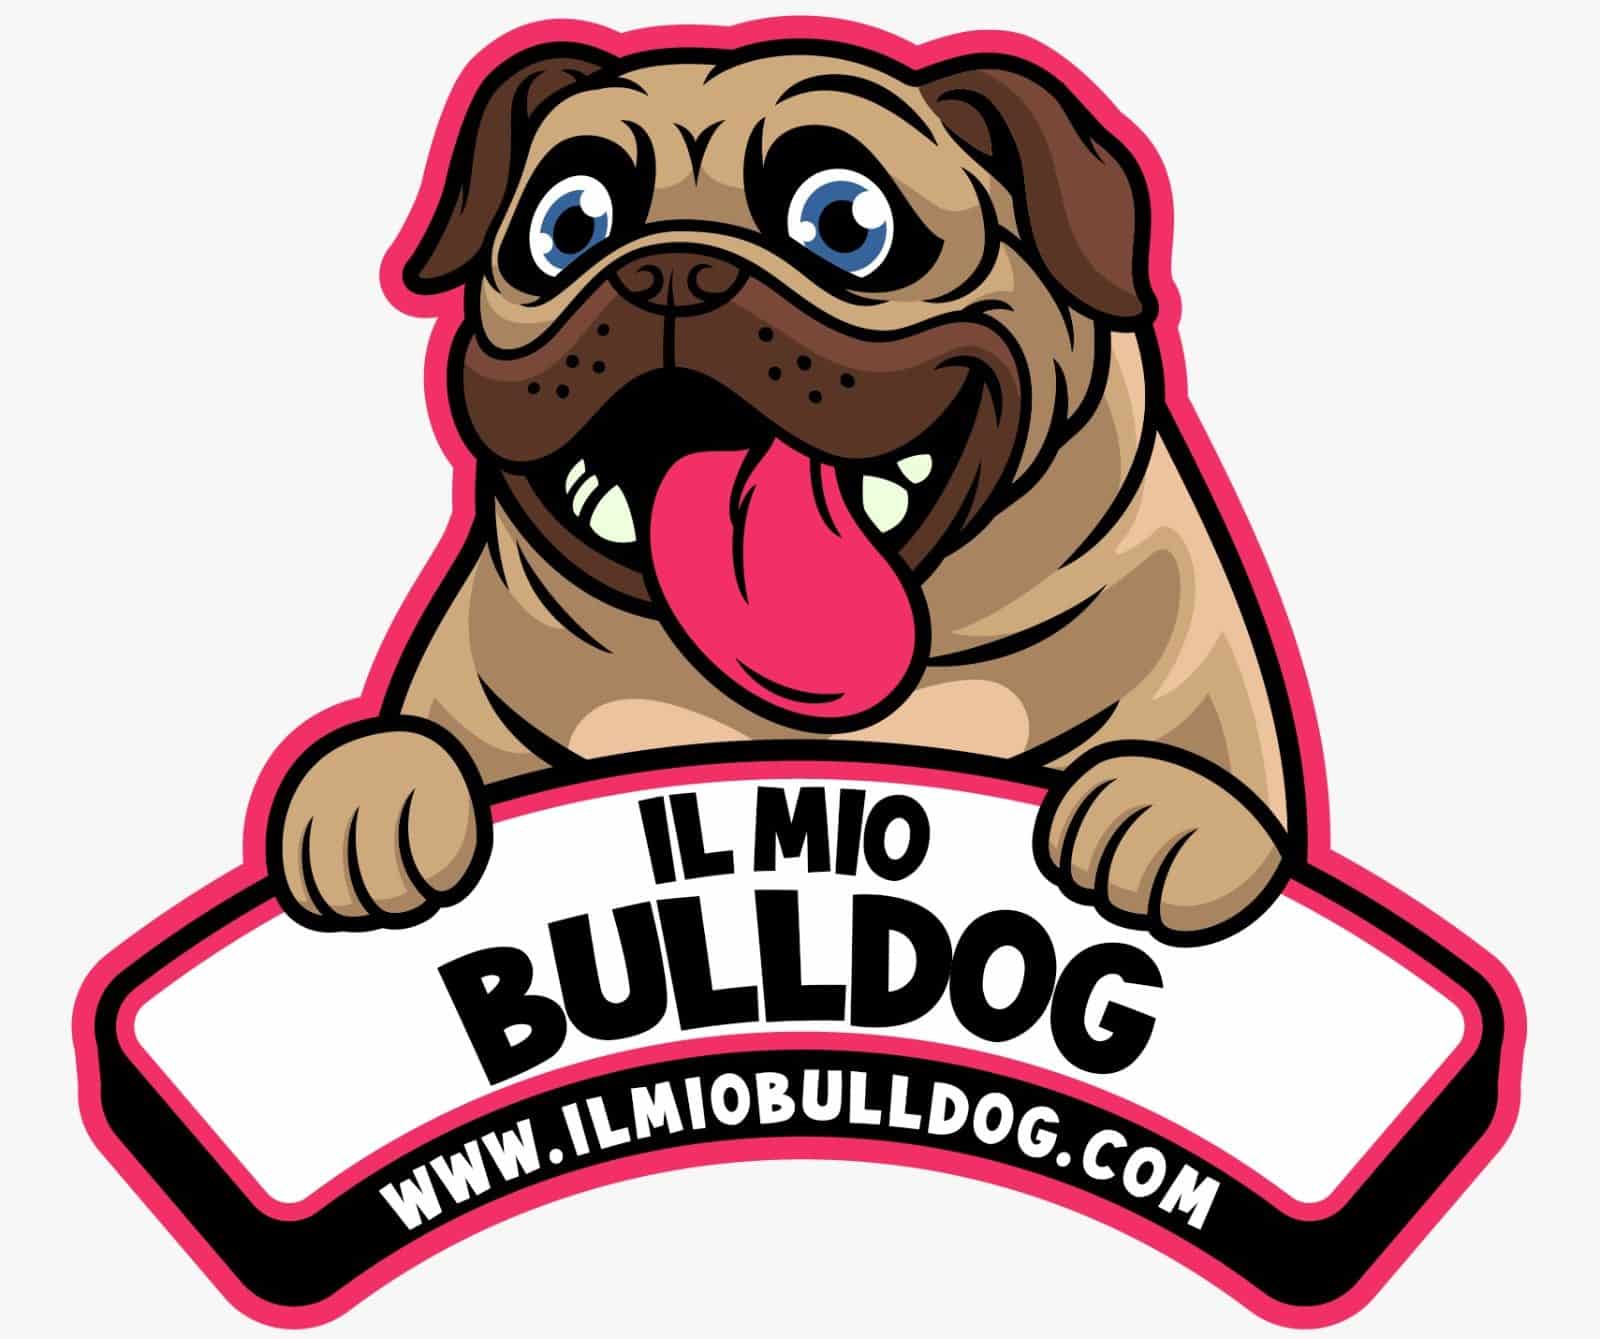 ilmiobulldog.com